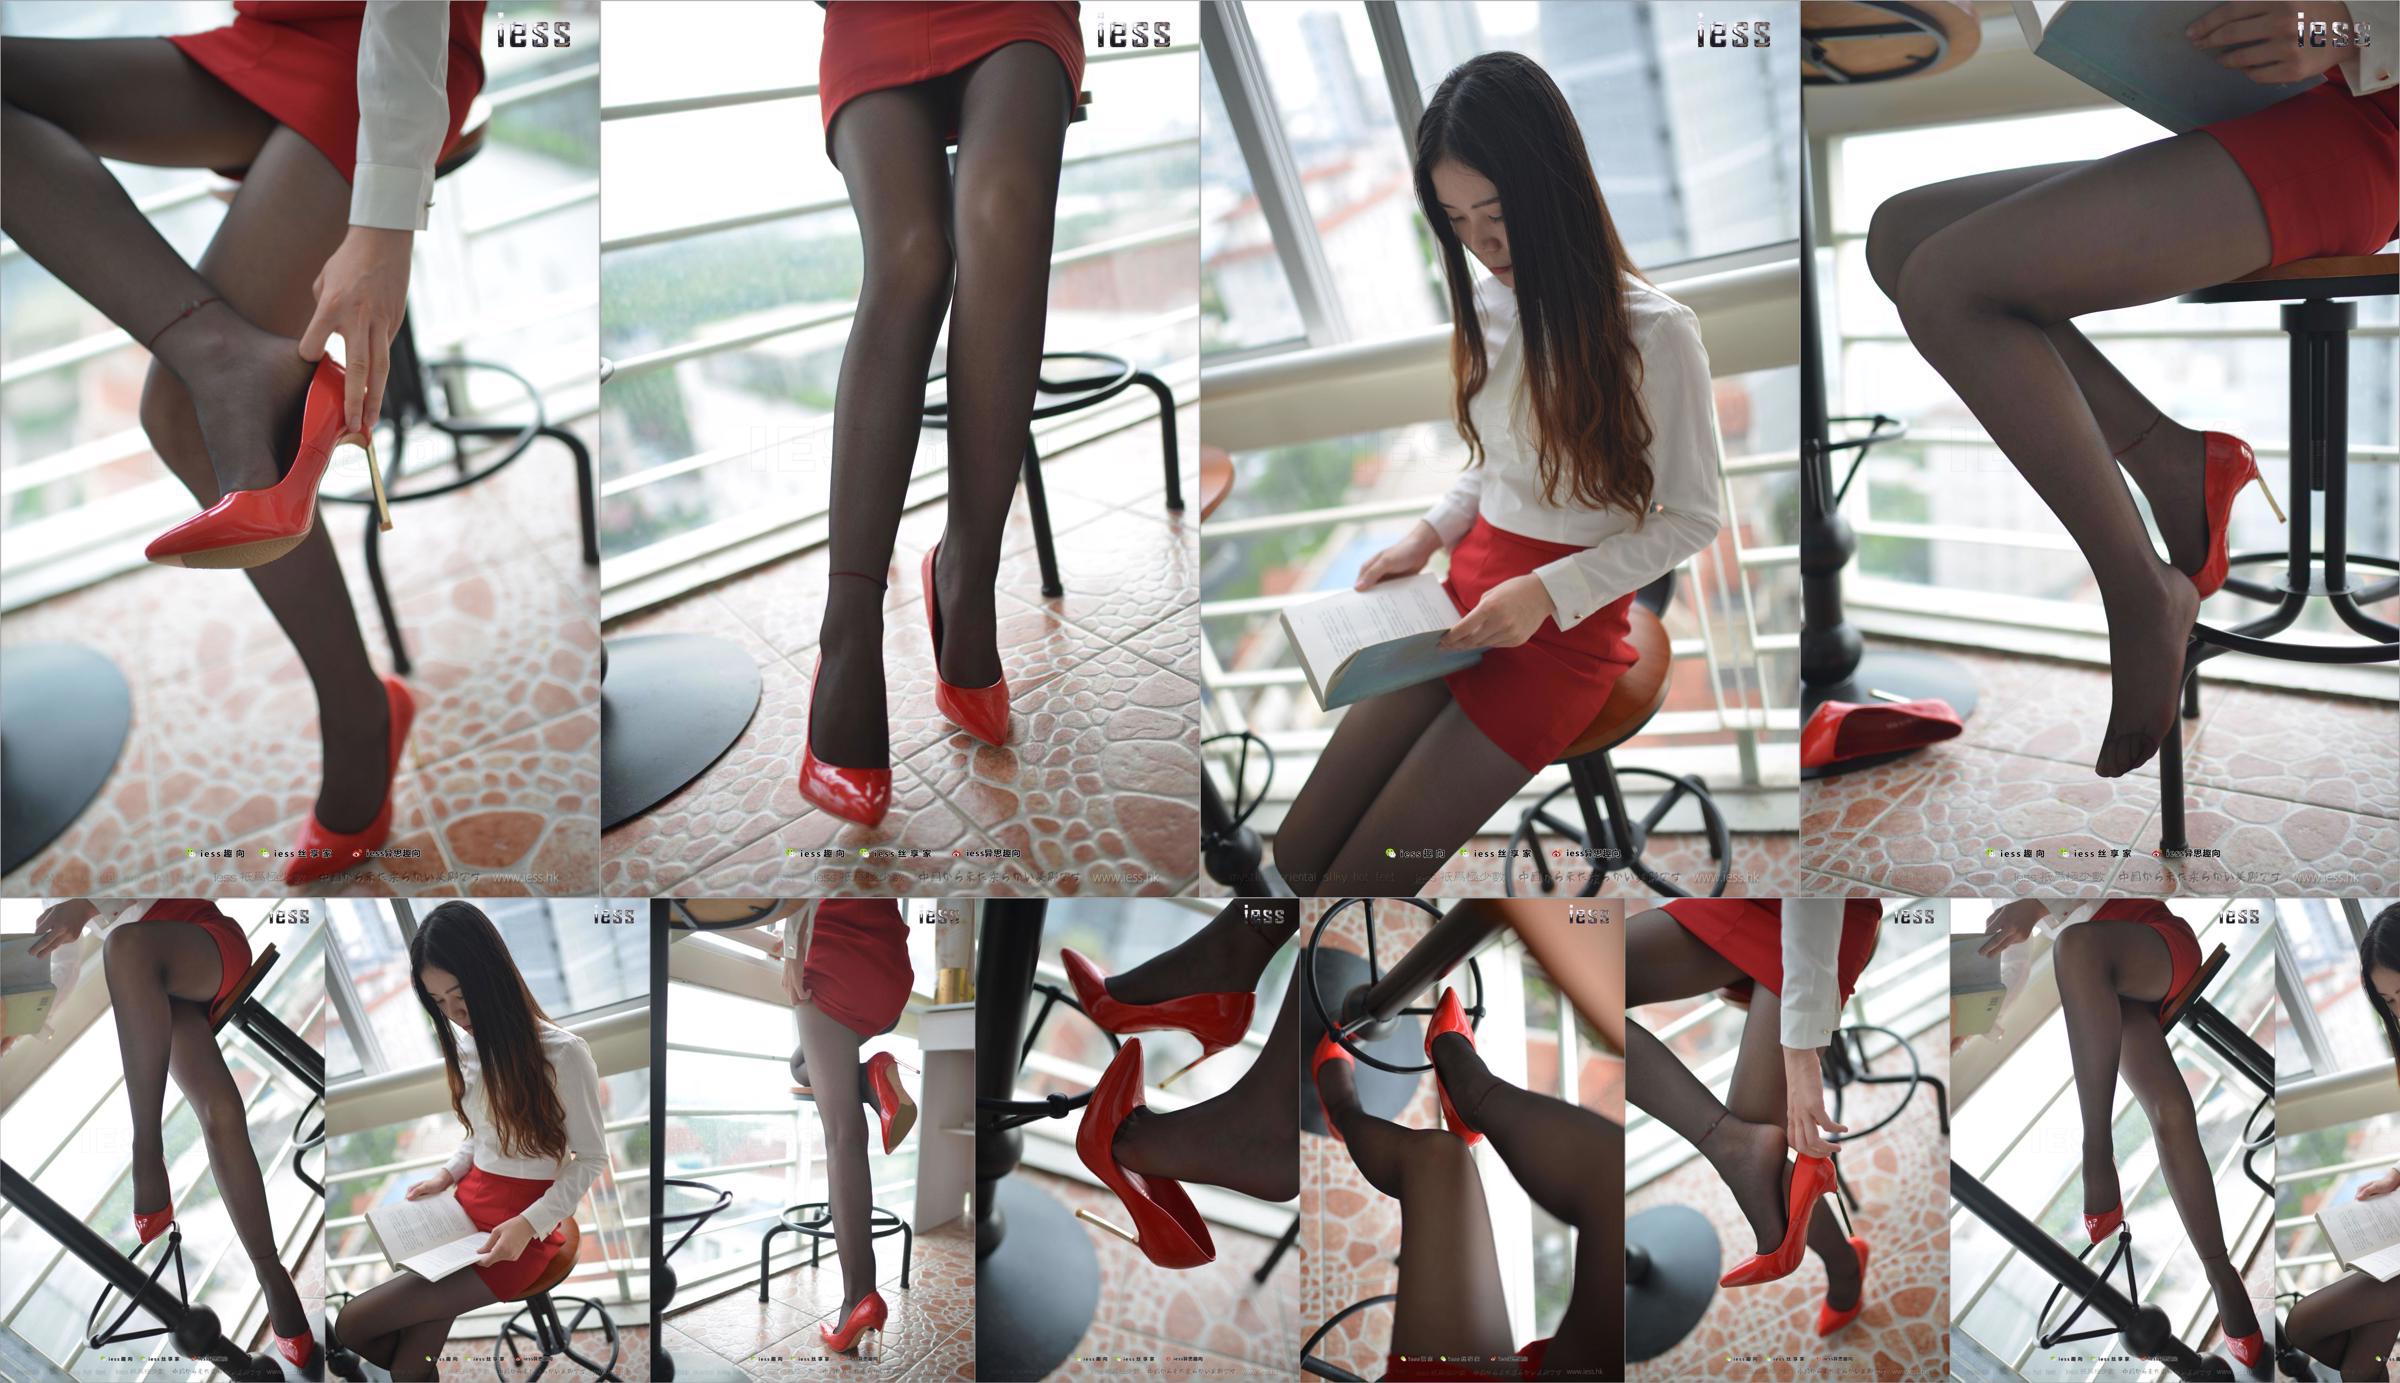 Silk Foot Bento 147 Concubine "Red High, Black Silk and Red Dress" [IESS Estranho Interessante] No.33151d Página 8